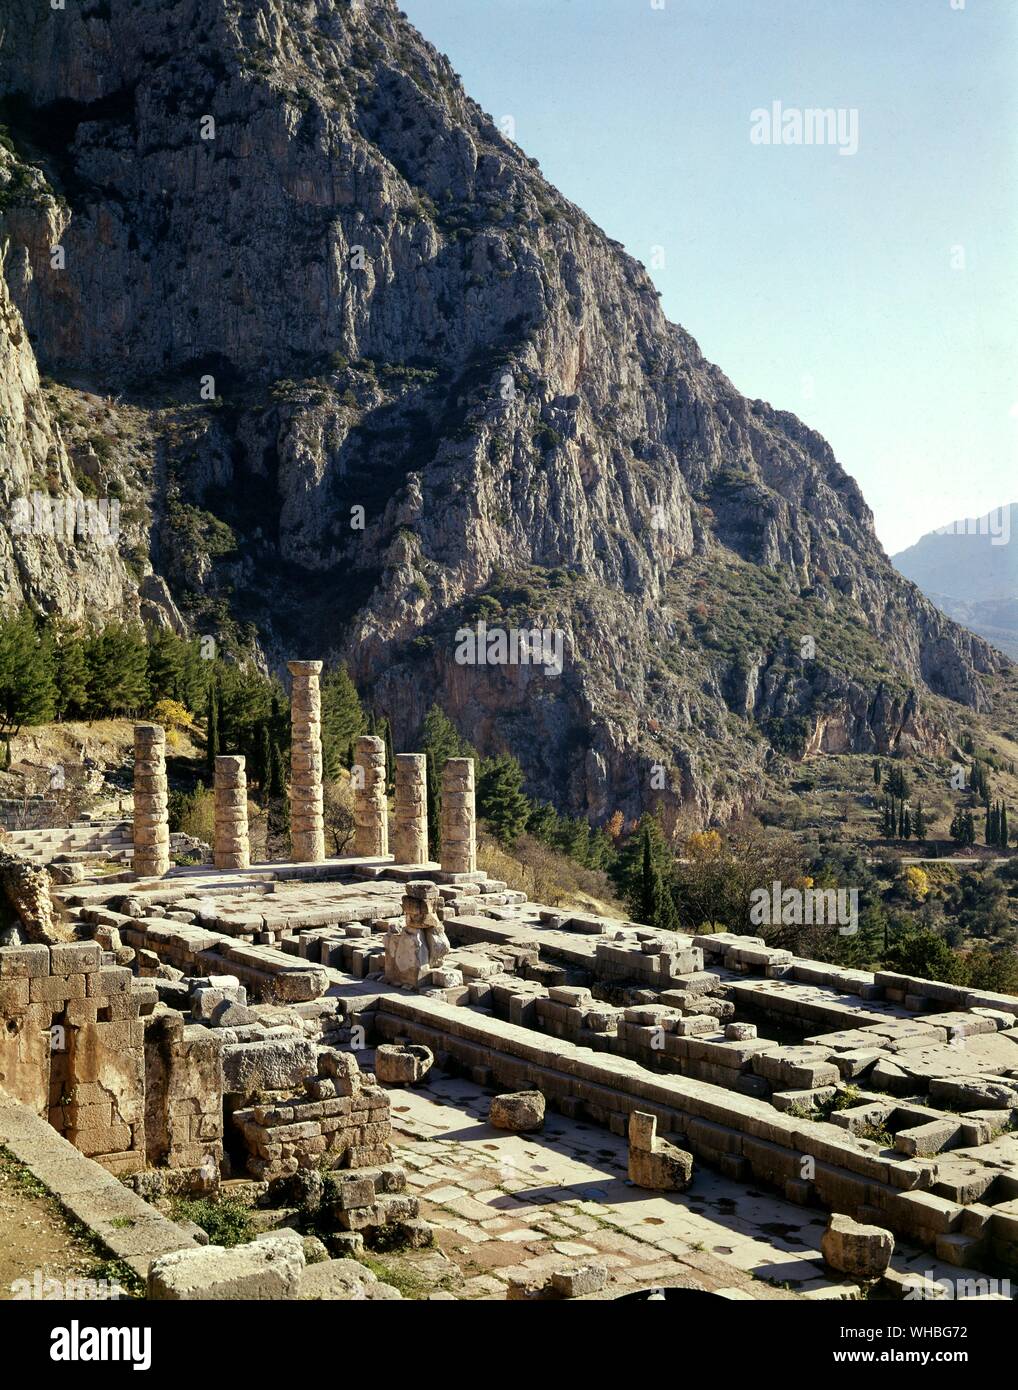 Delphi, Griechenland - eine archäologische Stätte und eine moderne Stadt in Griechenland auf der süd-westlichen Ausläufer des Mount Parnassus im Tal der Phocis. Delphi war der Ort der Orakel, wichtigste Oracle in der klassischen griechischen Welt, und es war ein wichtiger Standort für die Anbetung des Gottes Apollo. . Stockfoto